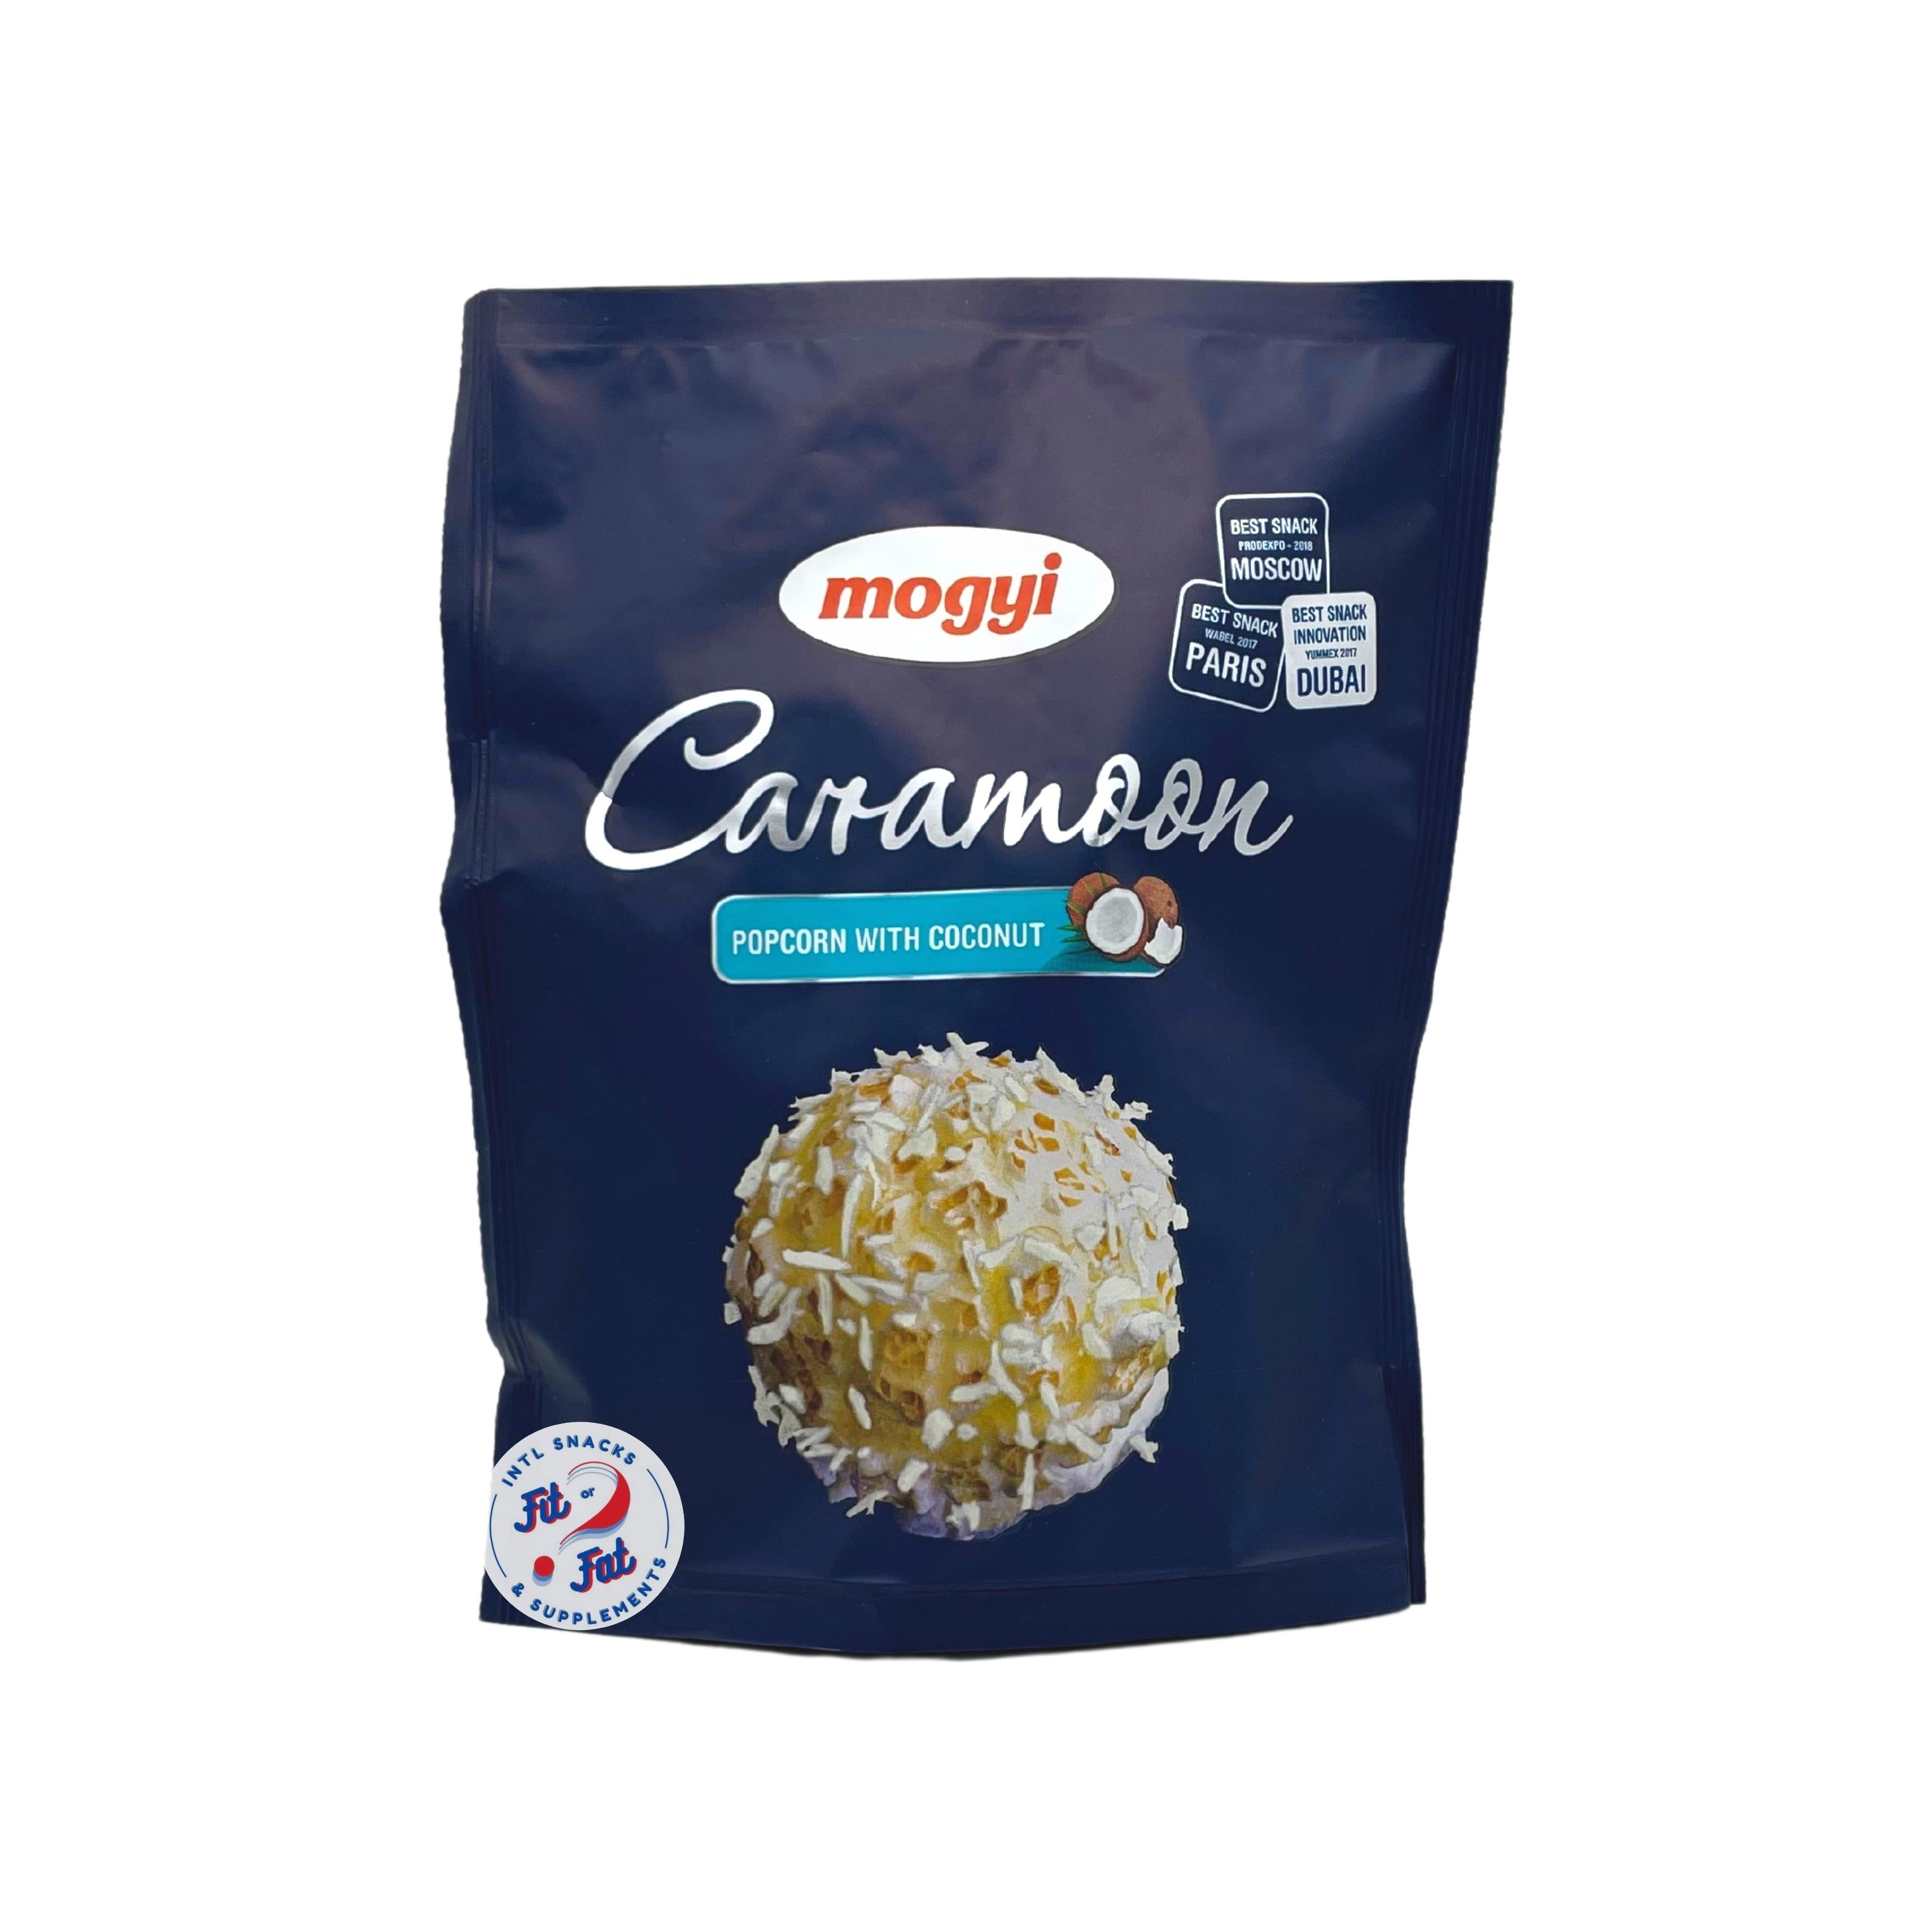 Mogiy Caramoon Popcorn with Coconut